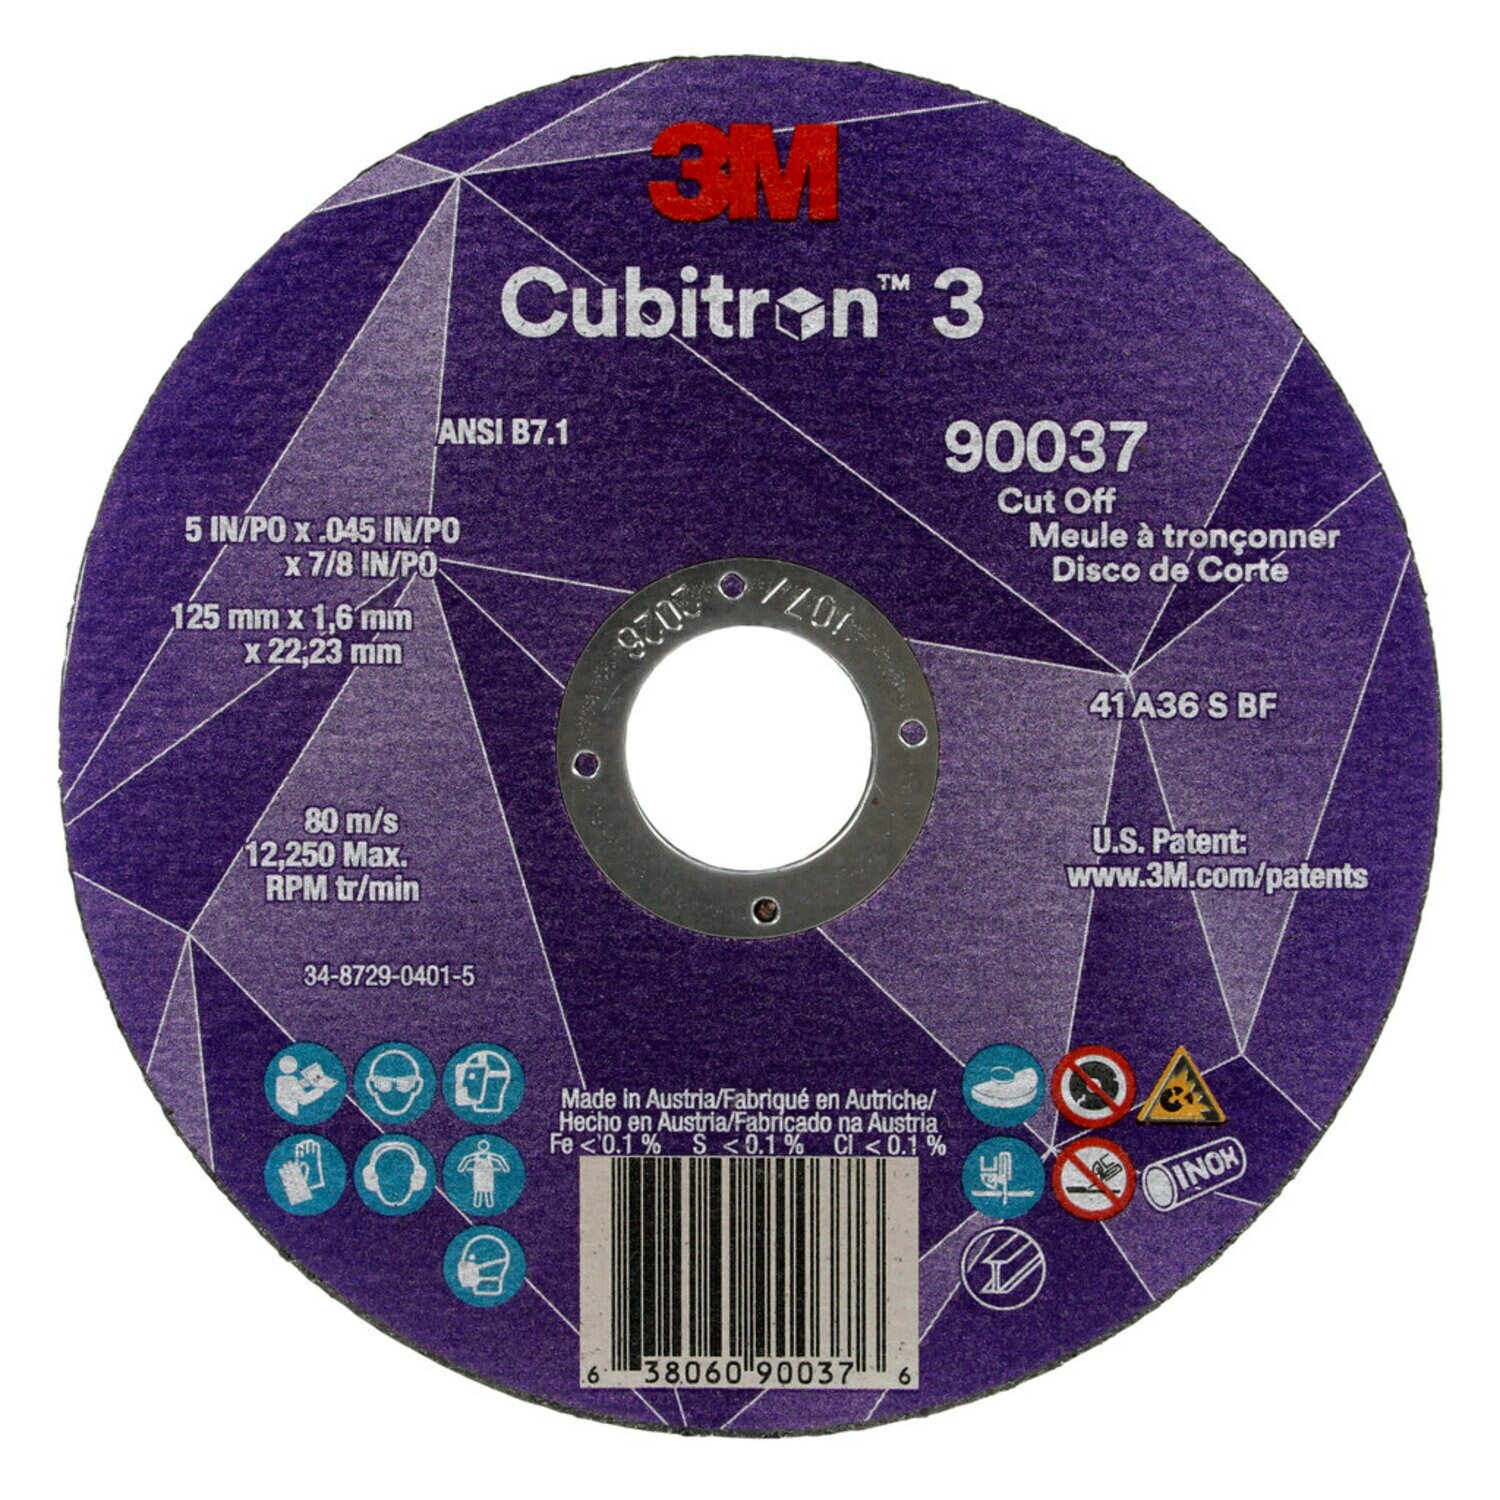 7100304007 - 3M Cubitron 3 Cut-Off Wheel, 90037, 36+, T1, 5 in x 0.045 in x 7/8 in
(125 x 1.6 x 22.23 mm), ANSI, 25/Pack, 50 ea/Case